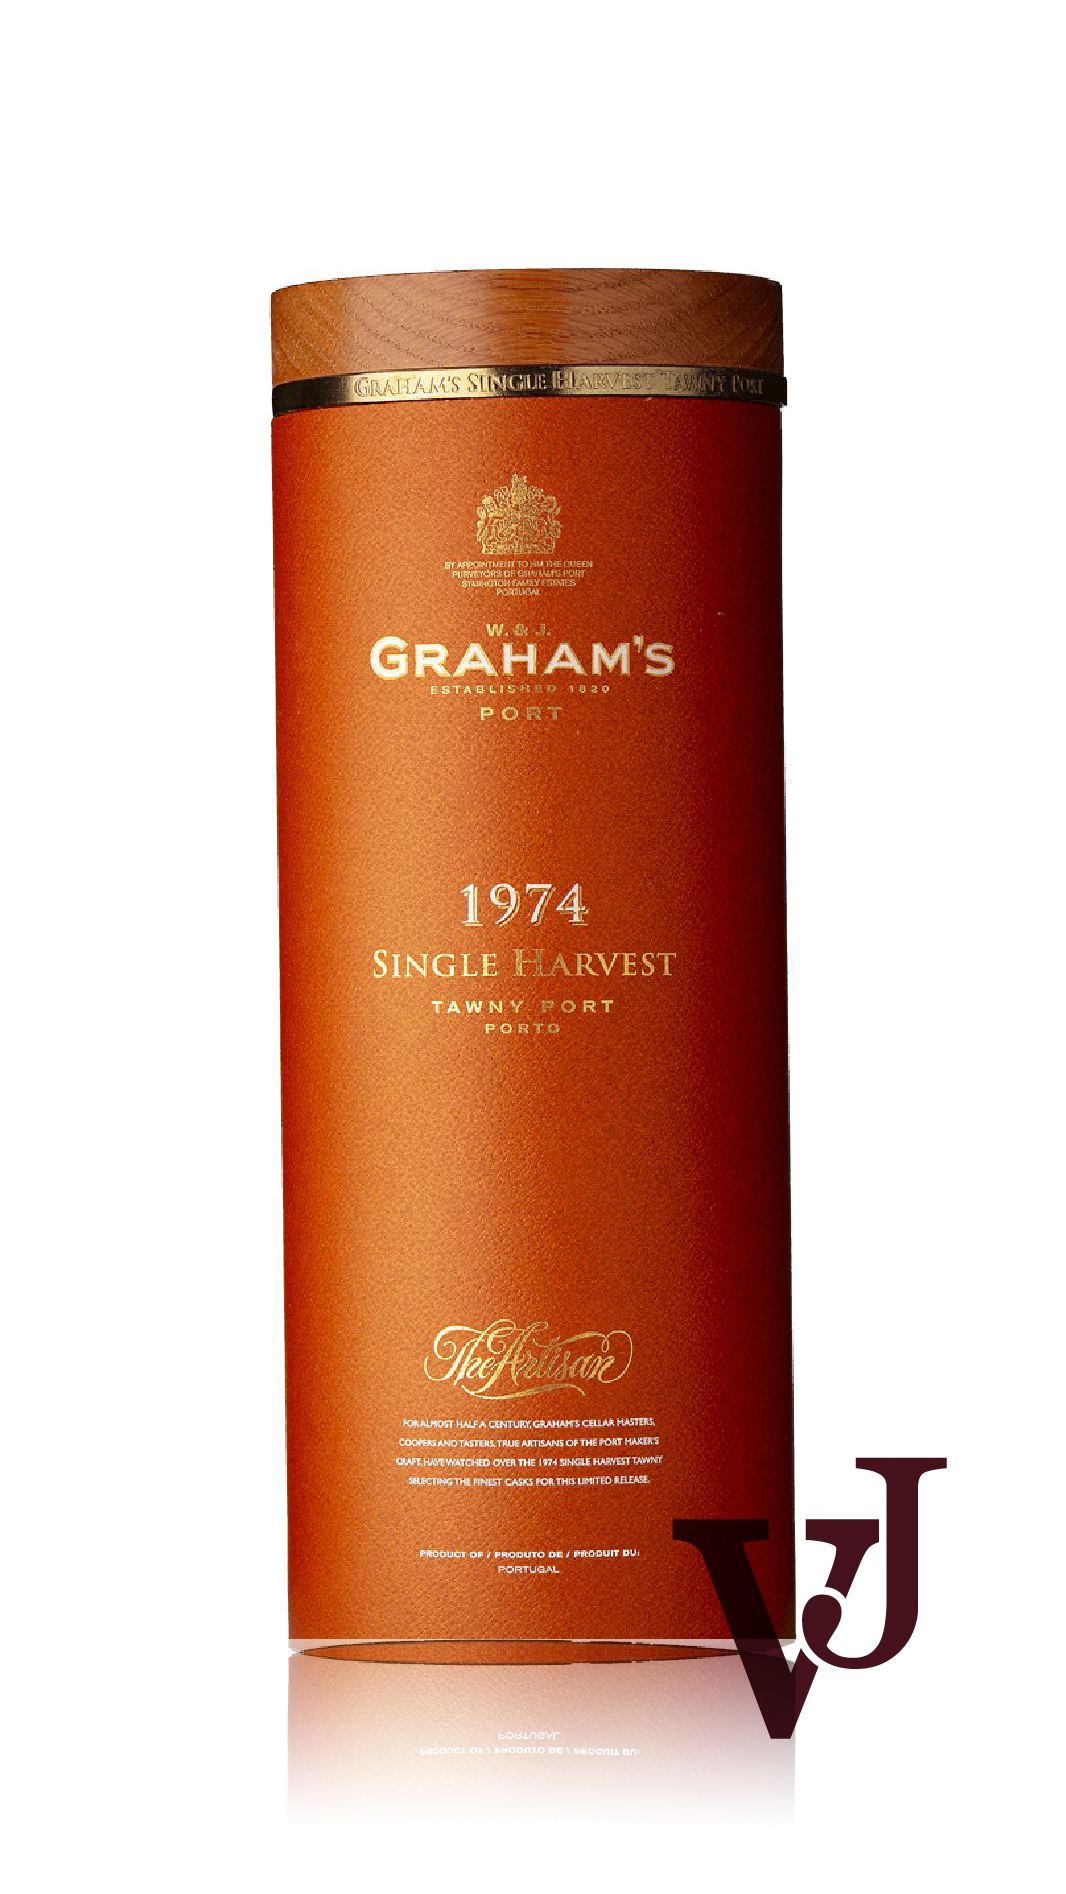 Övrigt Vin - Graham's Single Harvest Tawny Port 1974 artikel nummer 9180101 från producenten Graham's från området Portugal.